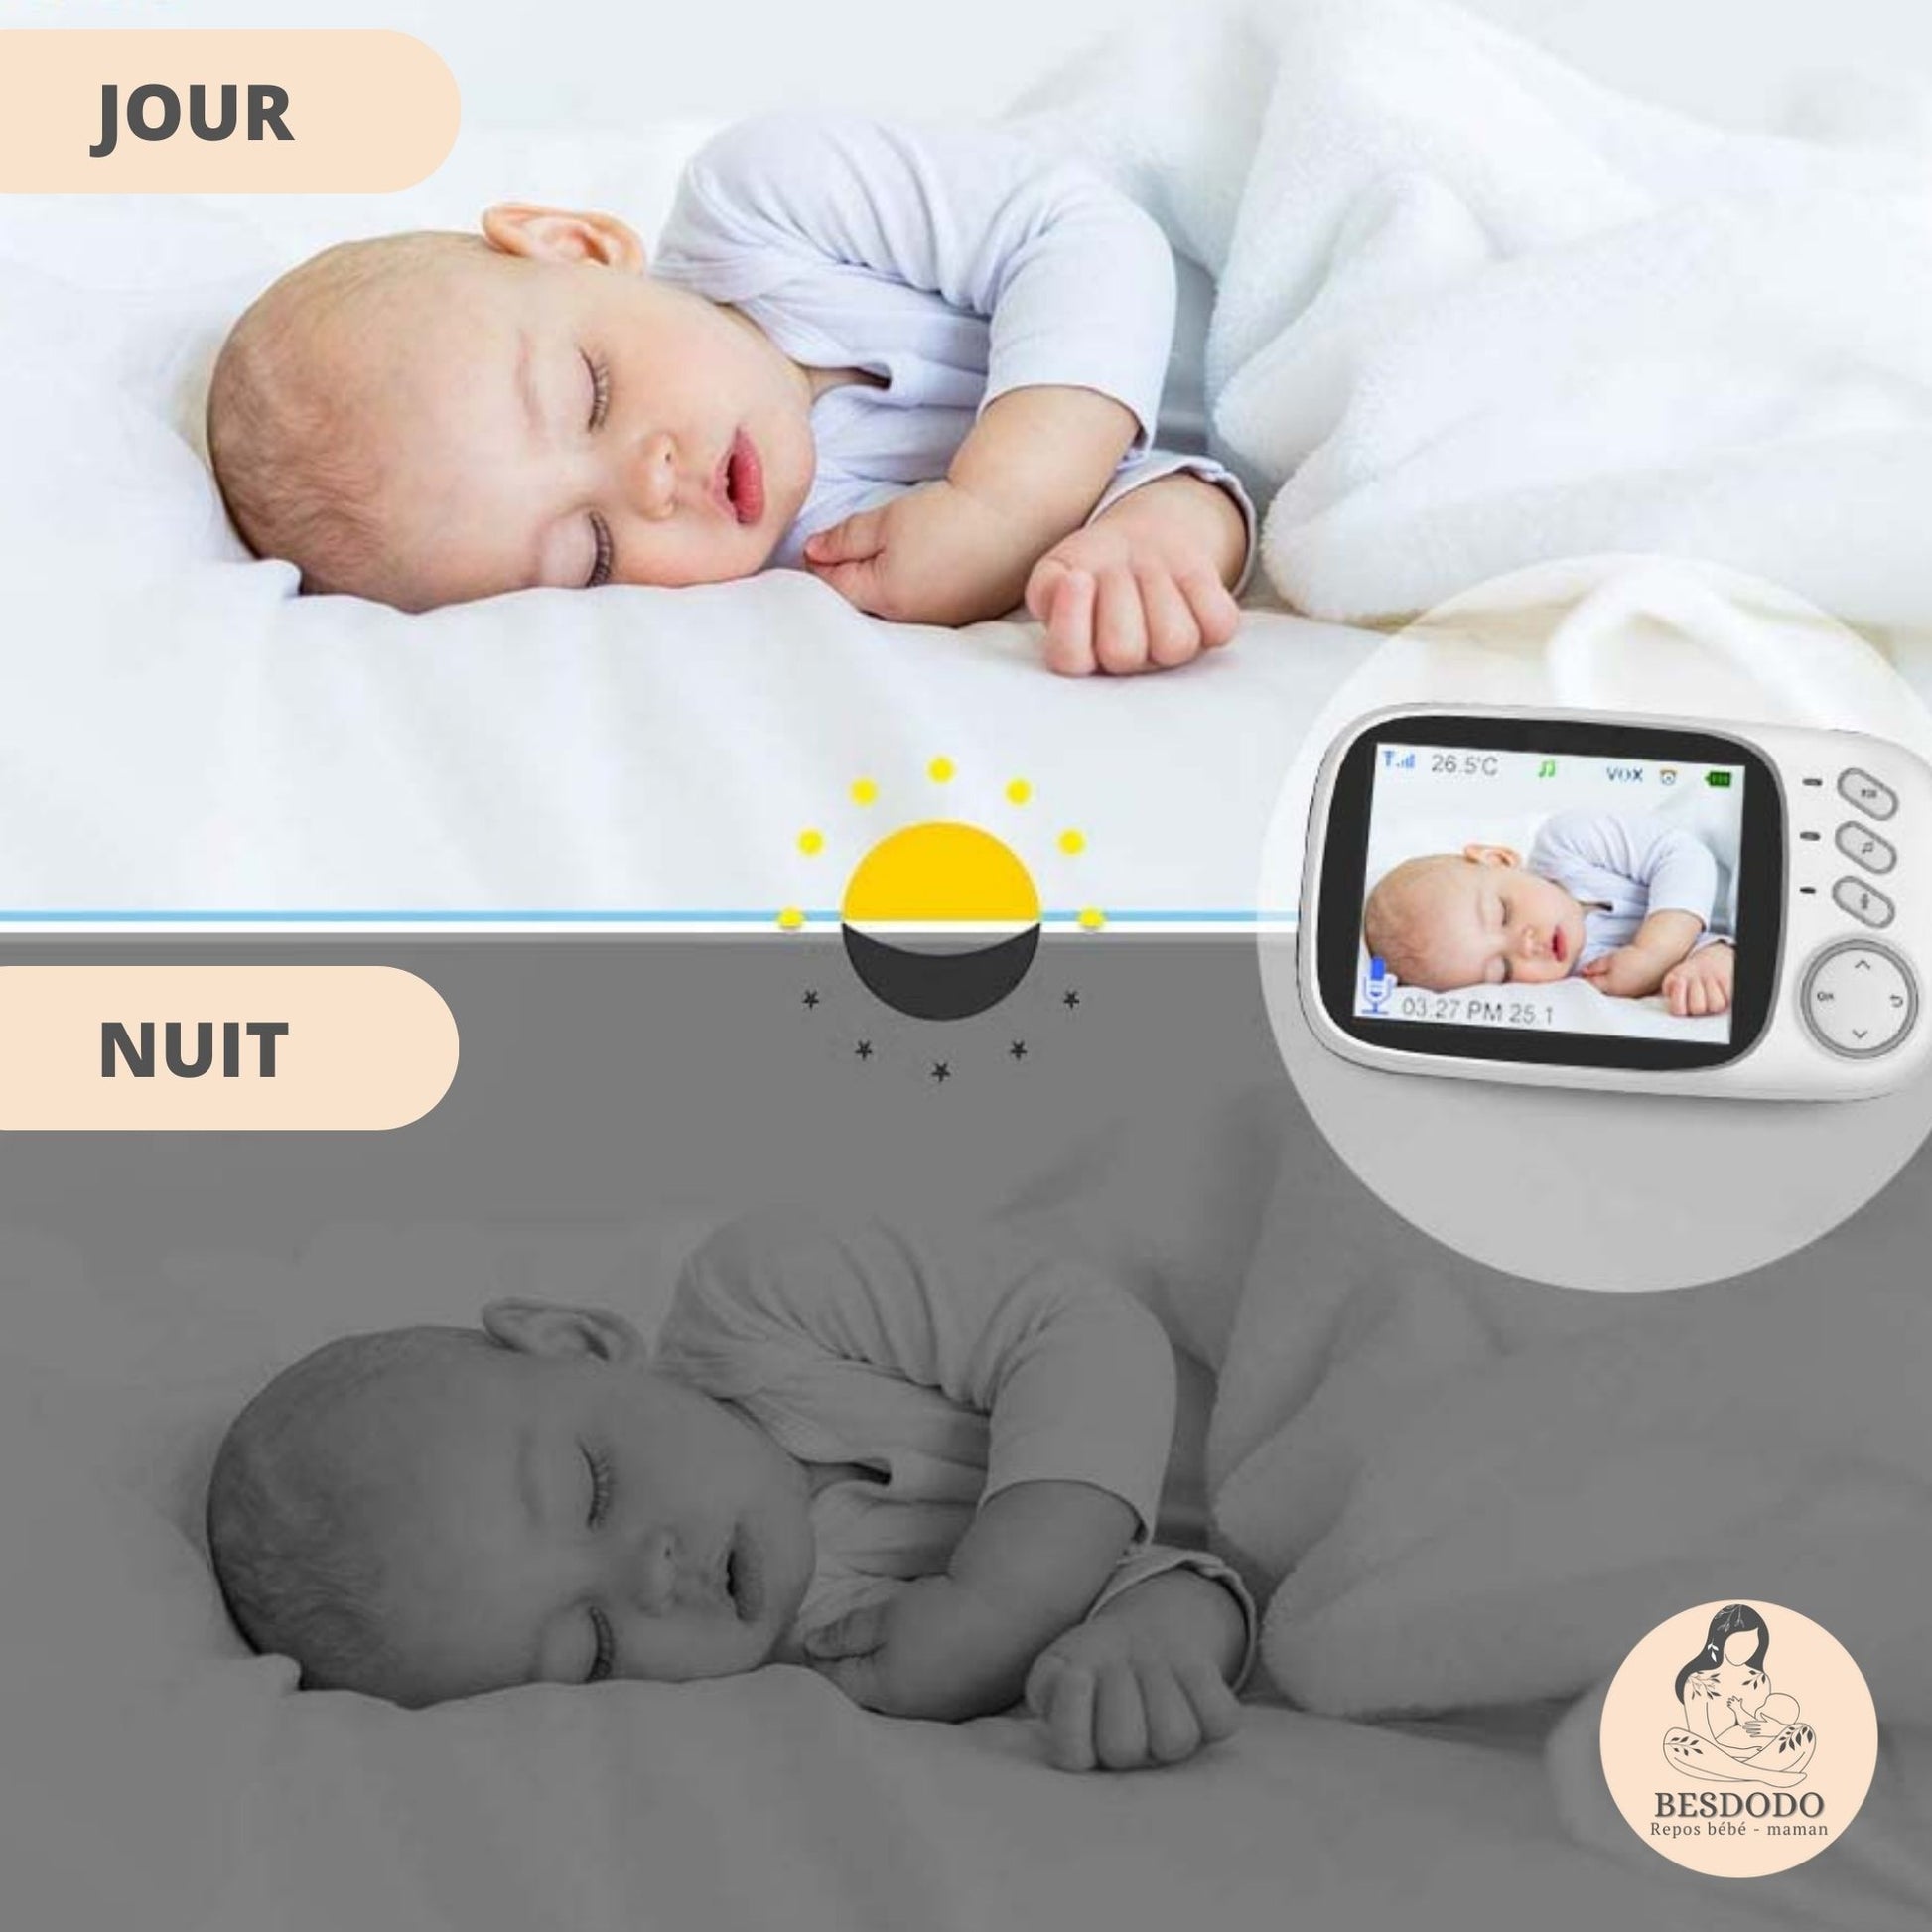 Camera surveillance bebe ǀ Baby Move™ Besdodo